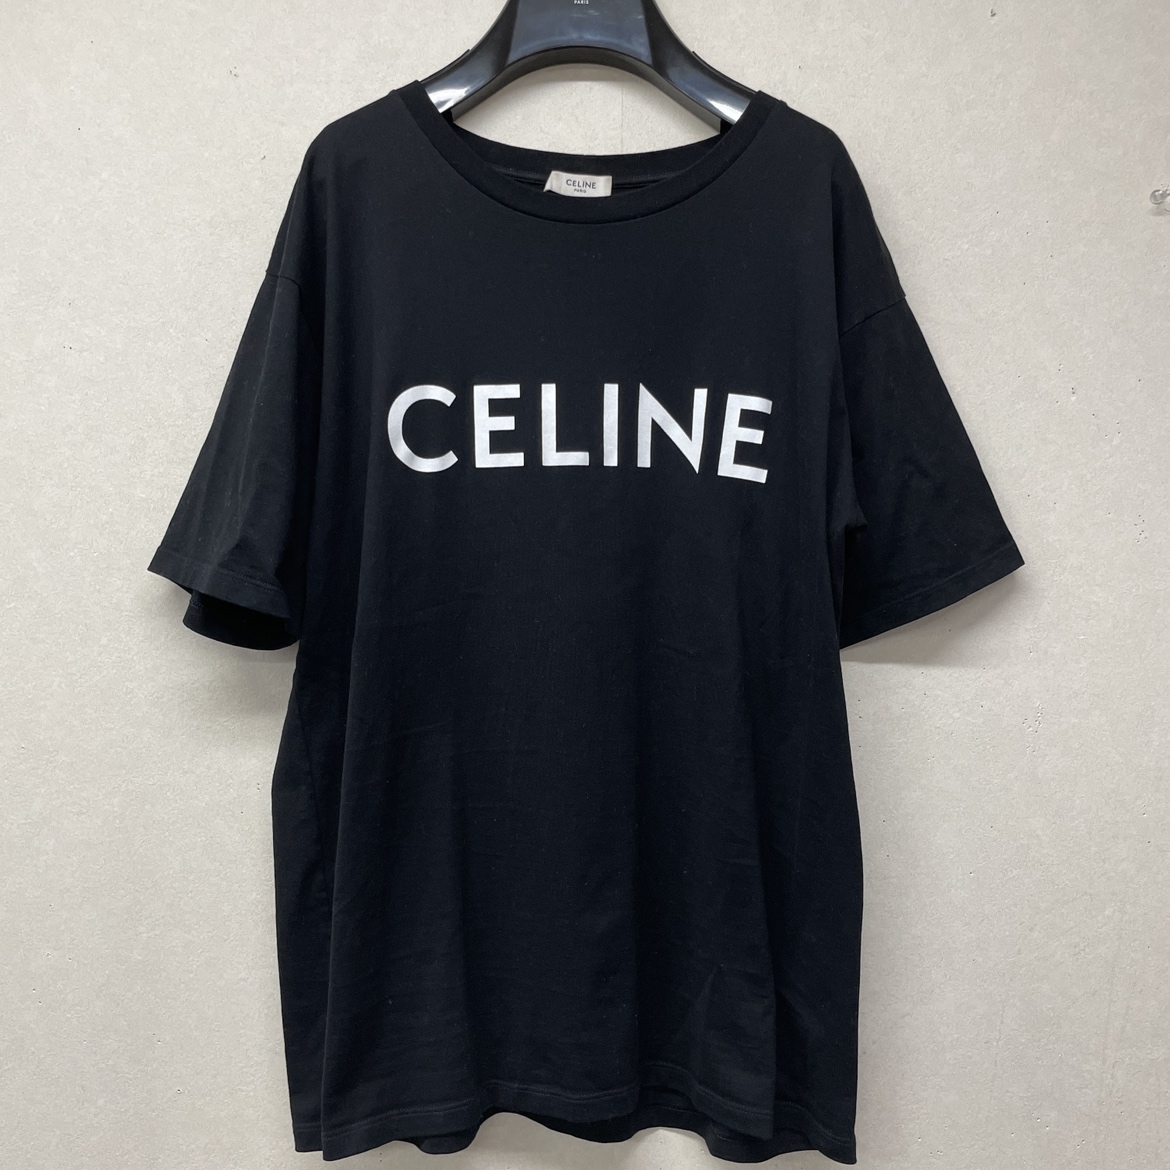 セリーヌのブラック ロゴルーズTシャツ 2X764671Qの買取実績です。